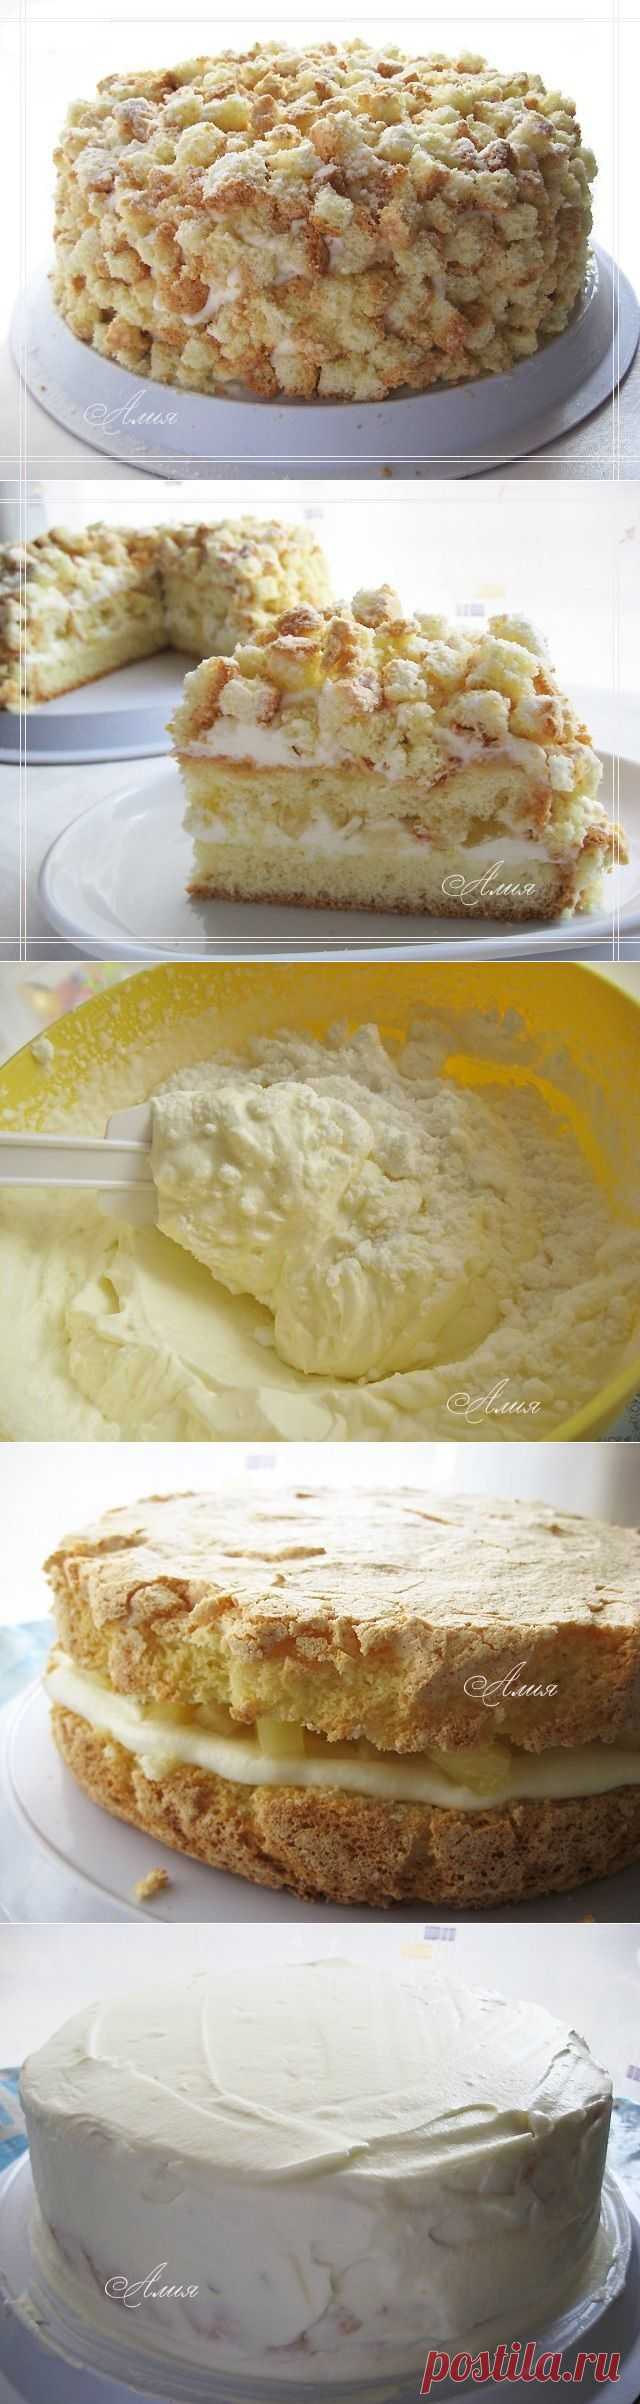 Как приготовить торт мимоза - рецепт, ингридиенты и фотографии